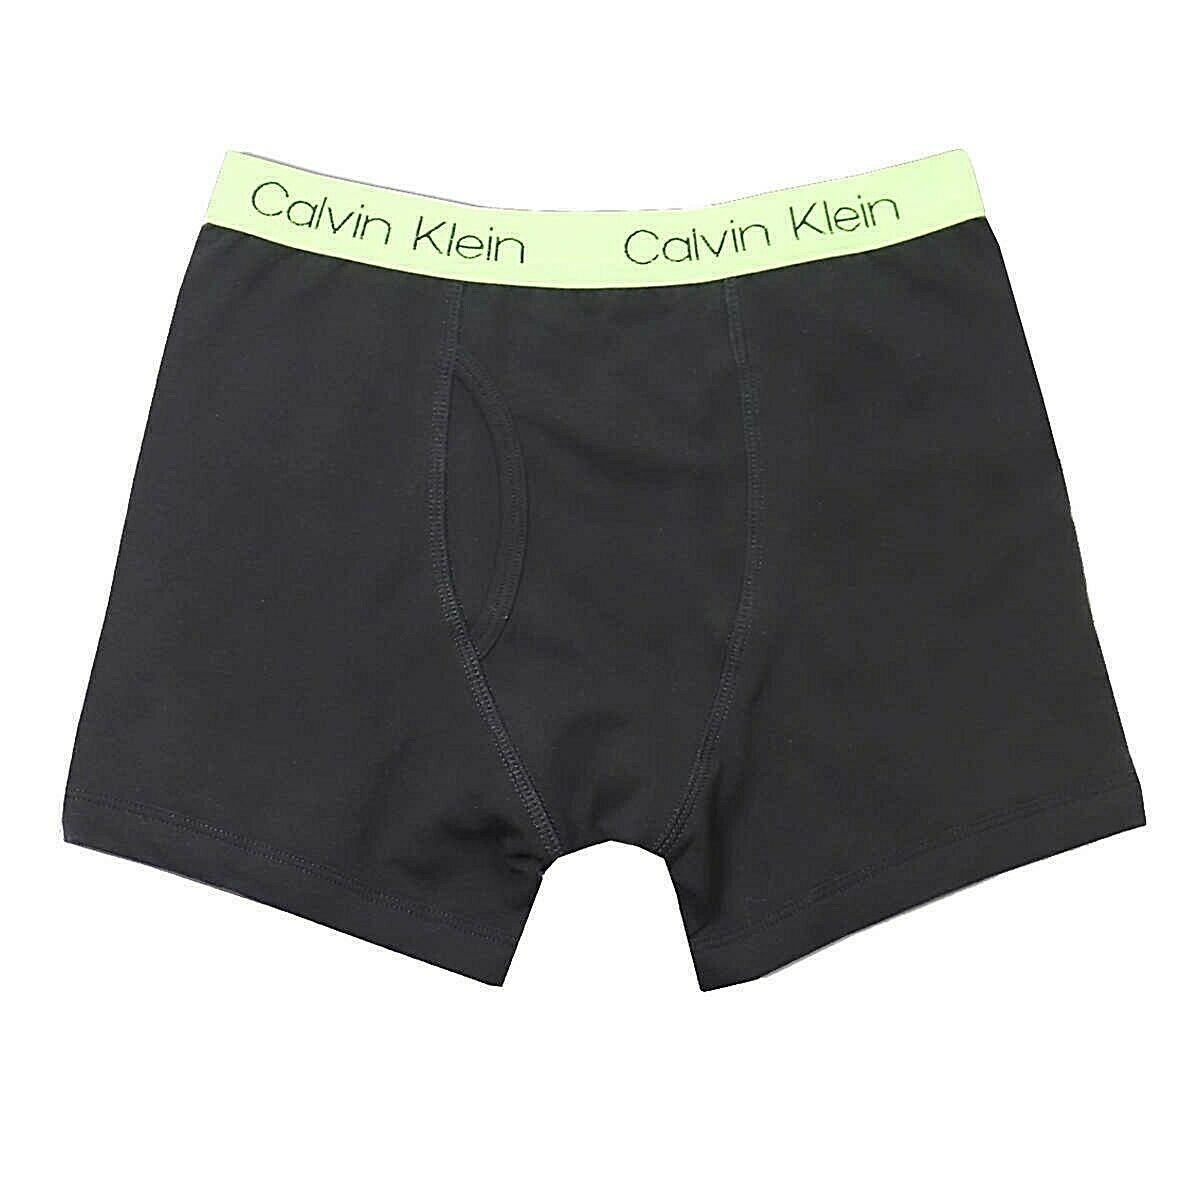 Calvin Klein Boys Boxer Brief Cotton Stretch Underwear, Small (6 Pack)